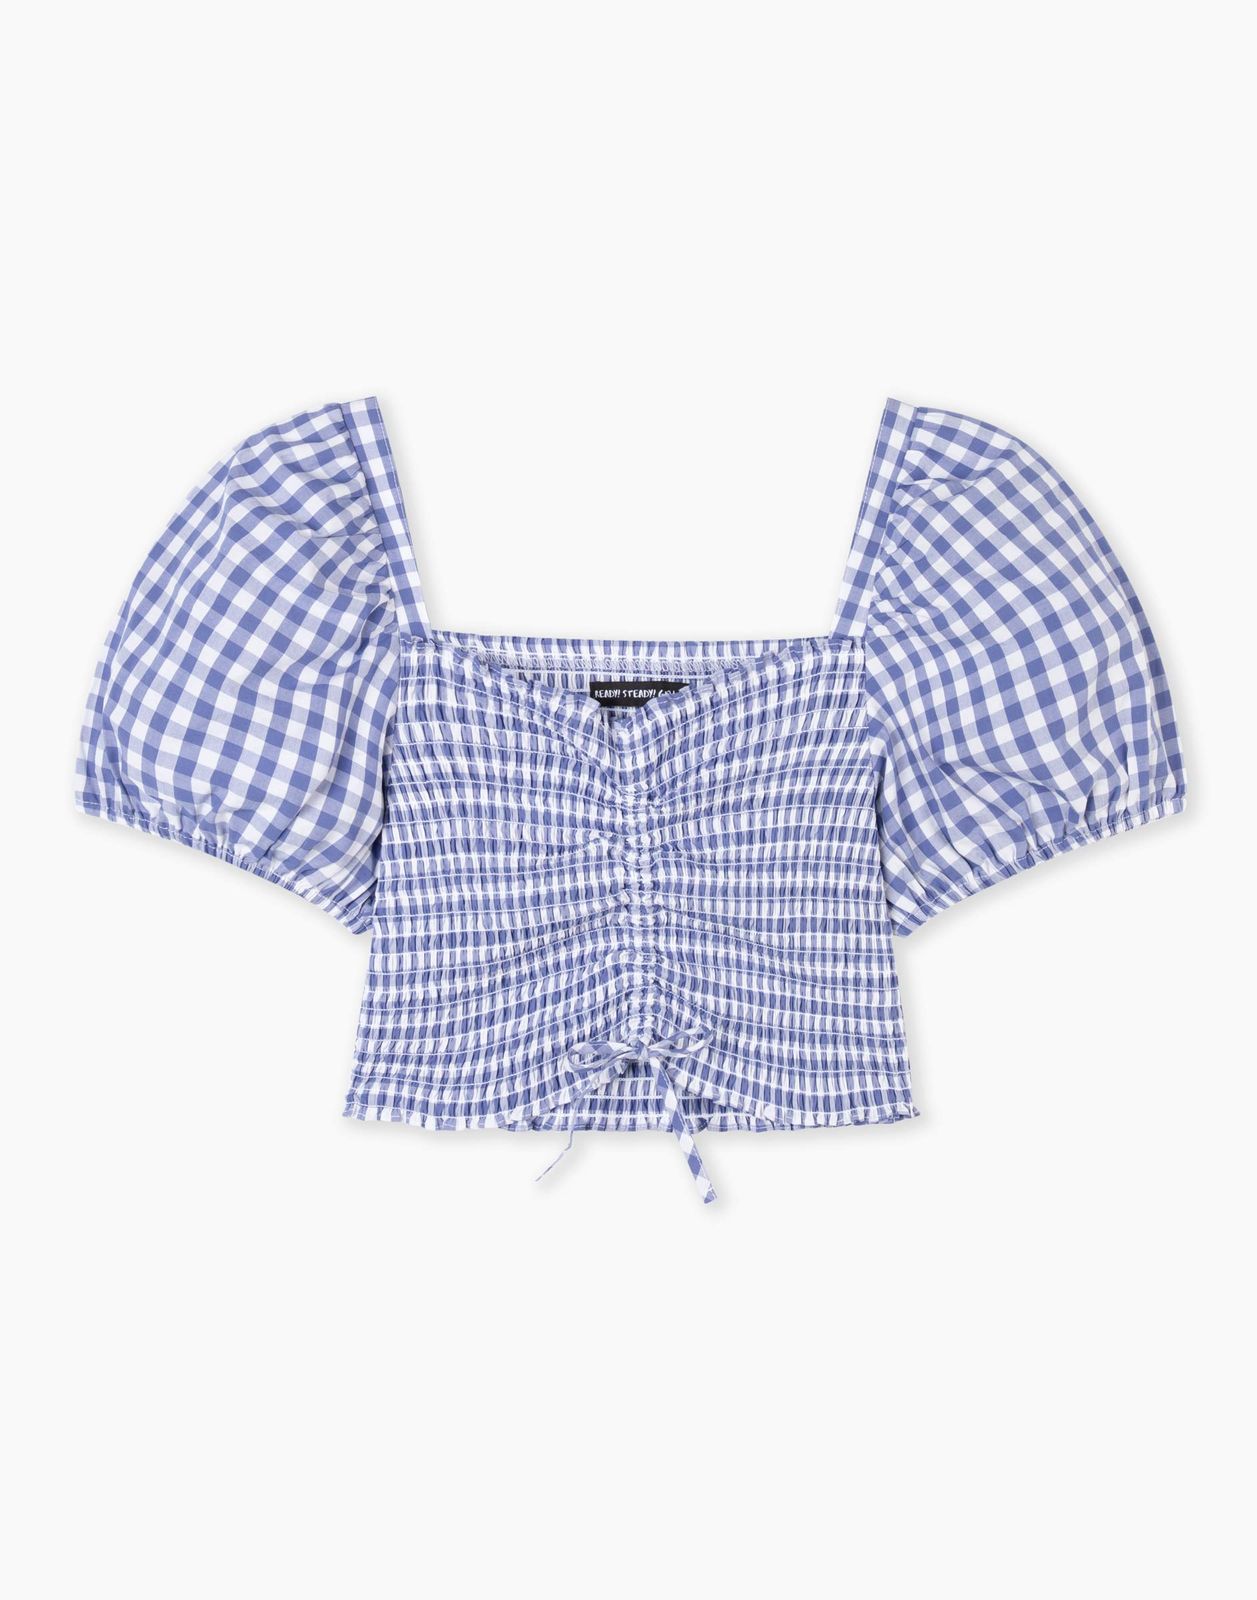 Блузка для девочки Gloria Jeans GWT003598 синий/белый 12-14л/164 конфетные поляны